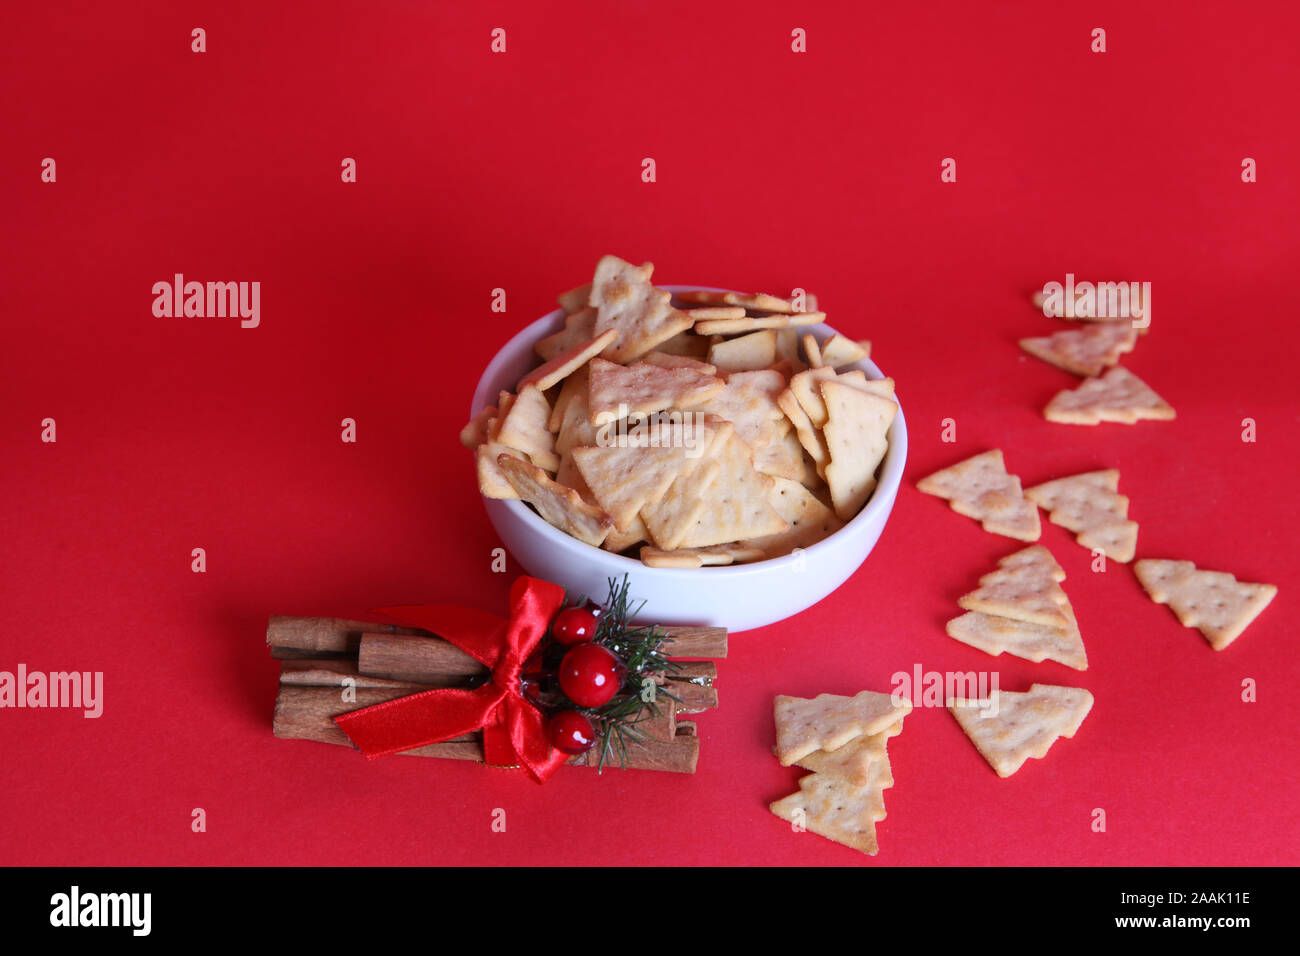 Jacobs Treesalls 2019, chips/craquelins en forme d'arbre de Noël, à base de cheesalls, dans un bol avec un peu éparpillés sur fond rouge avec espace de copie Banque D'Images